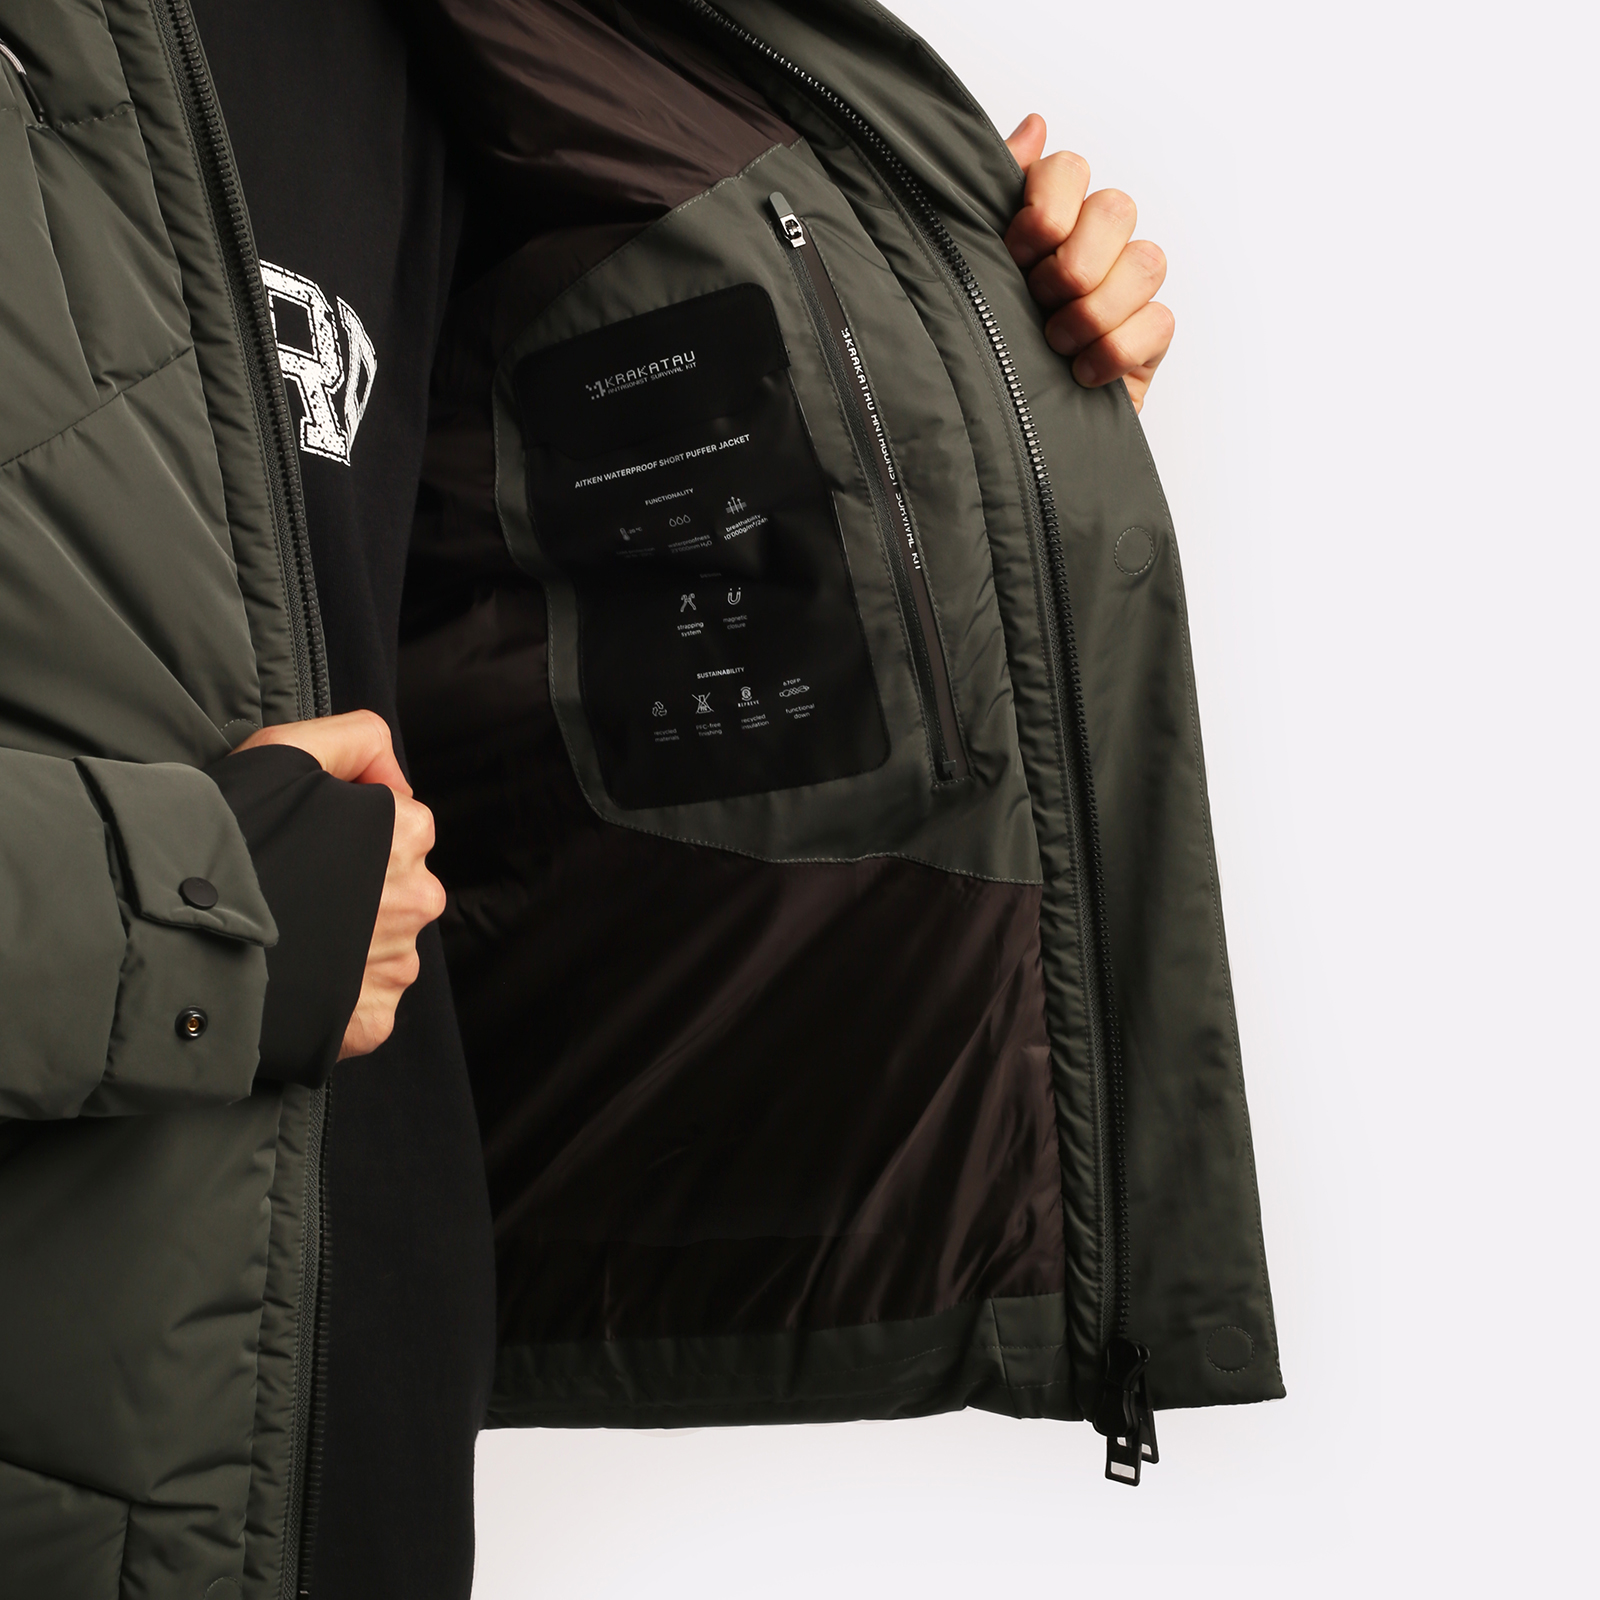 мужская серая куртка KRAKATAU Aitken  Qm440-52 ел-серый - цена, описание, фото 7